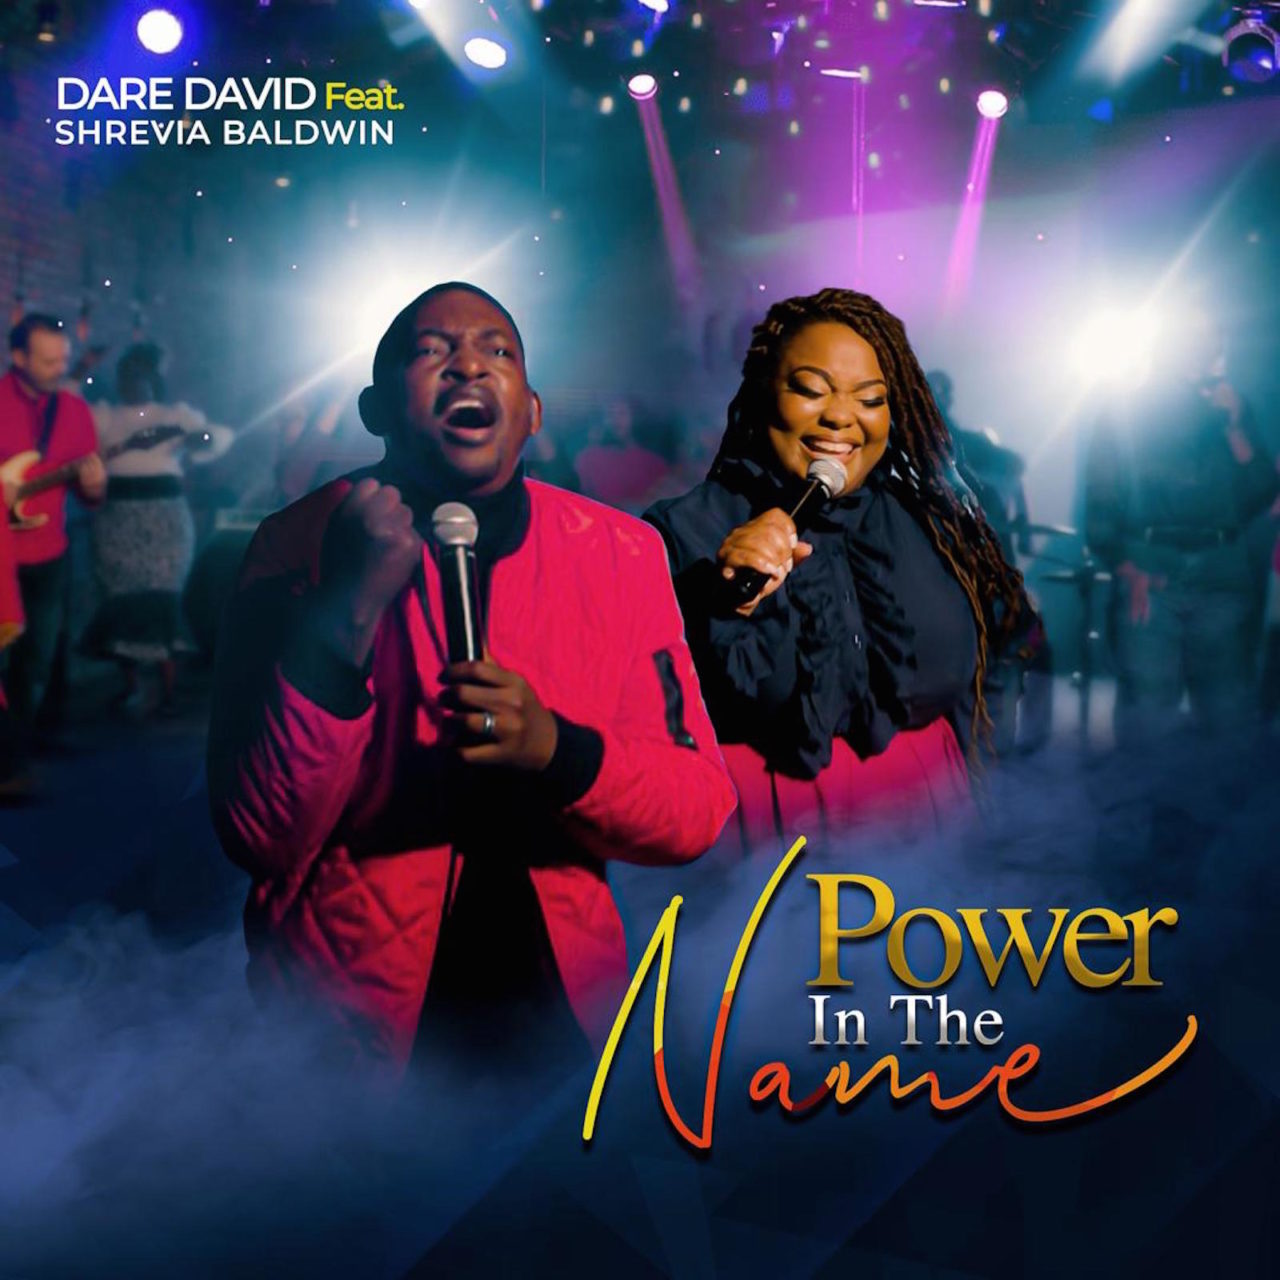 Power In The Name - Dare David ft. Shrevia Baldwin